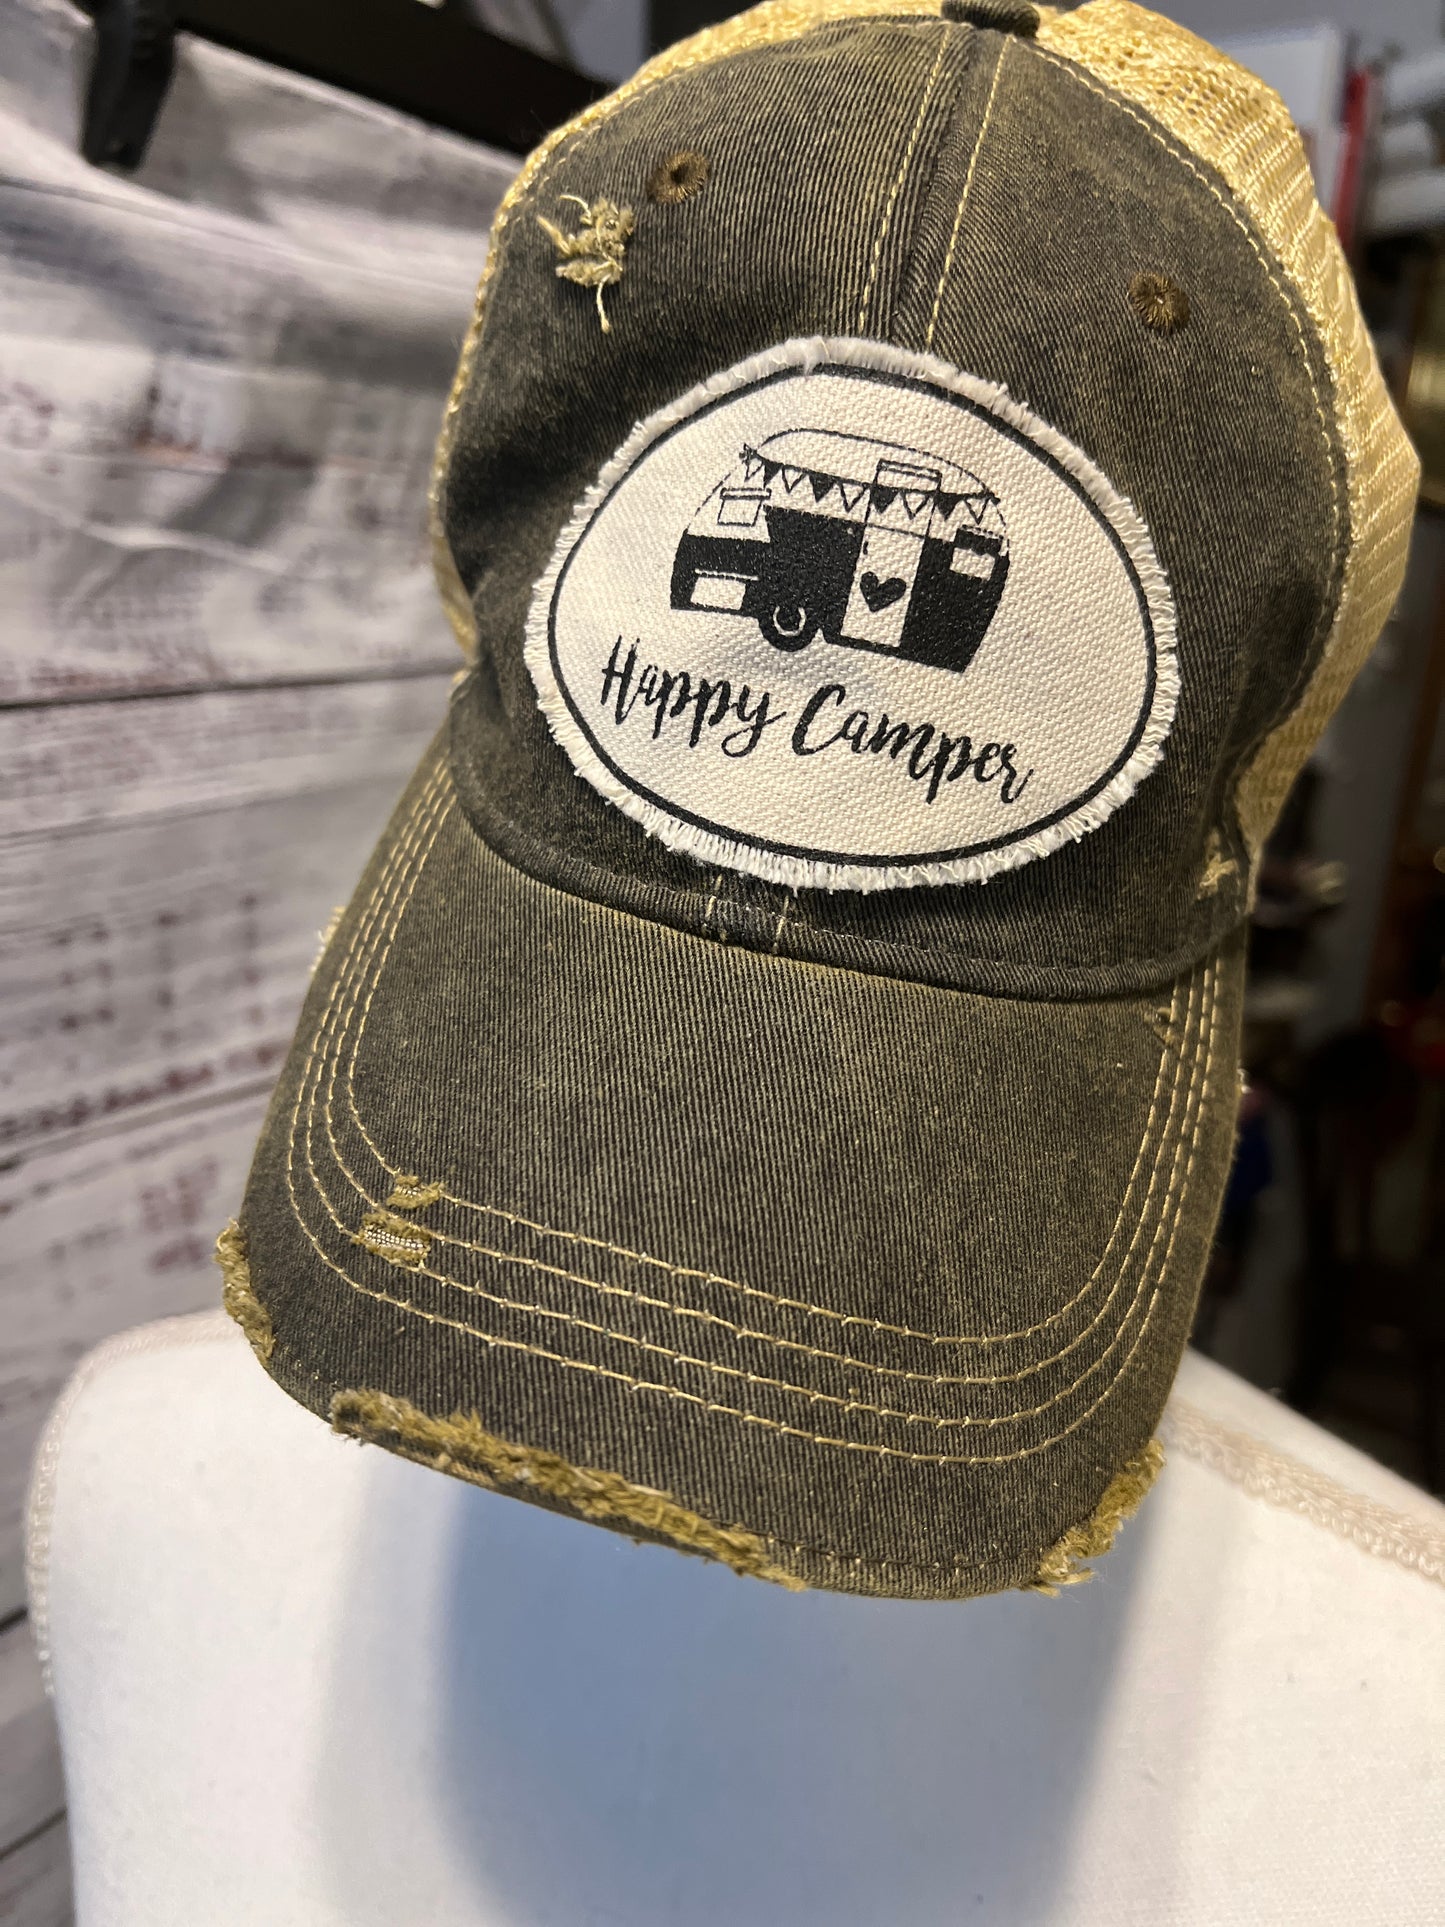 Happy Camper Baseball Cap